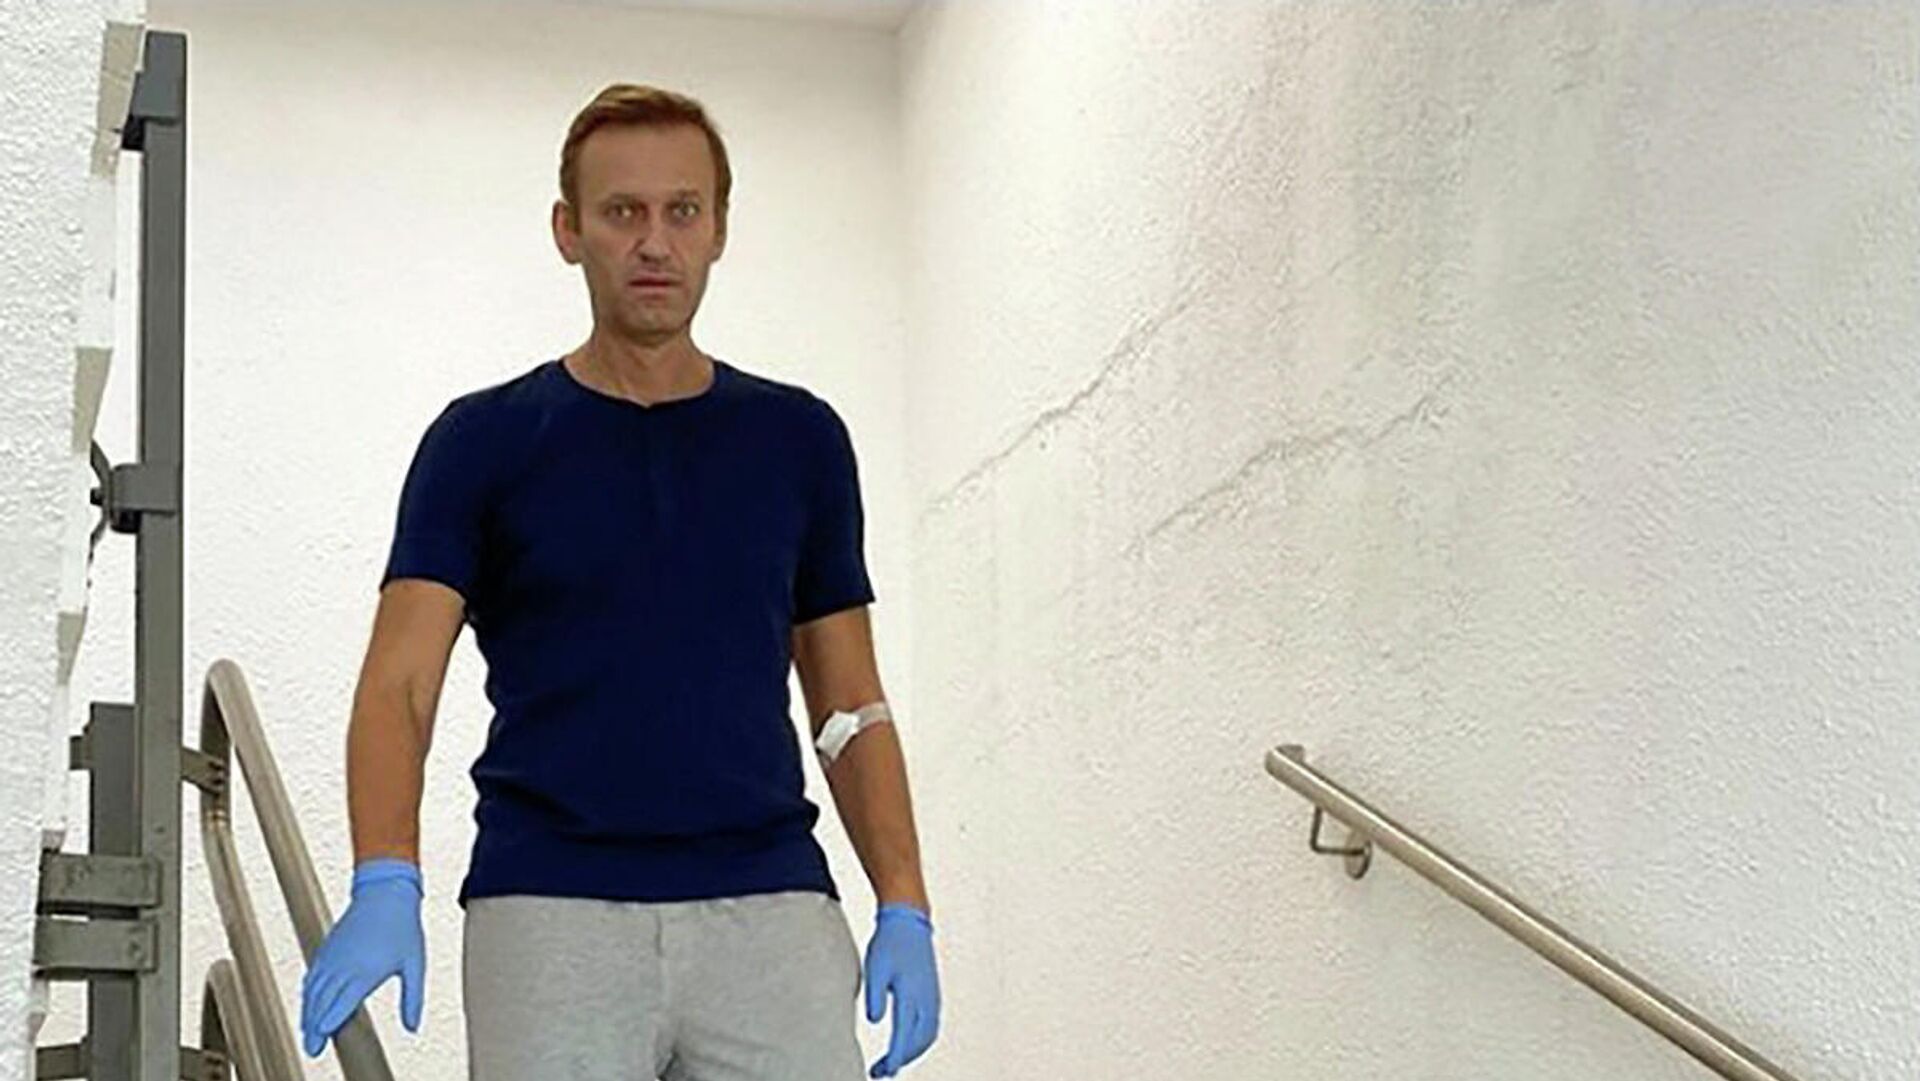 Разработчик "Новичка" оценил версию о причинах интоксикации Навального